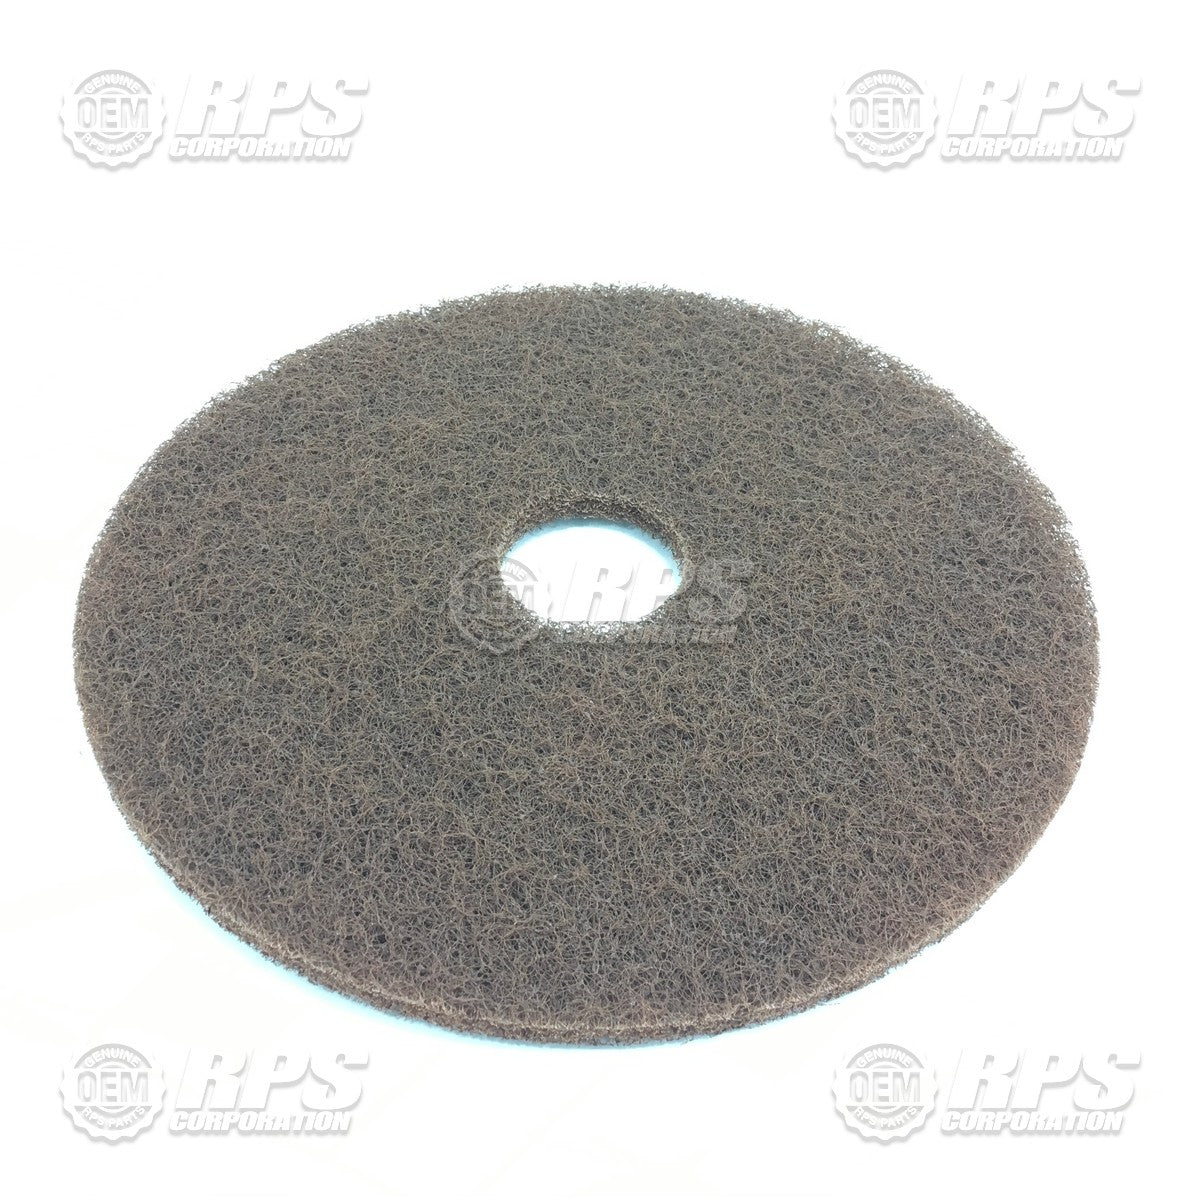 FactoryCat/Tomcat 14-422BR, Floor Pads, 14" Brown - Case of 5 pads